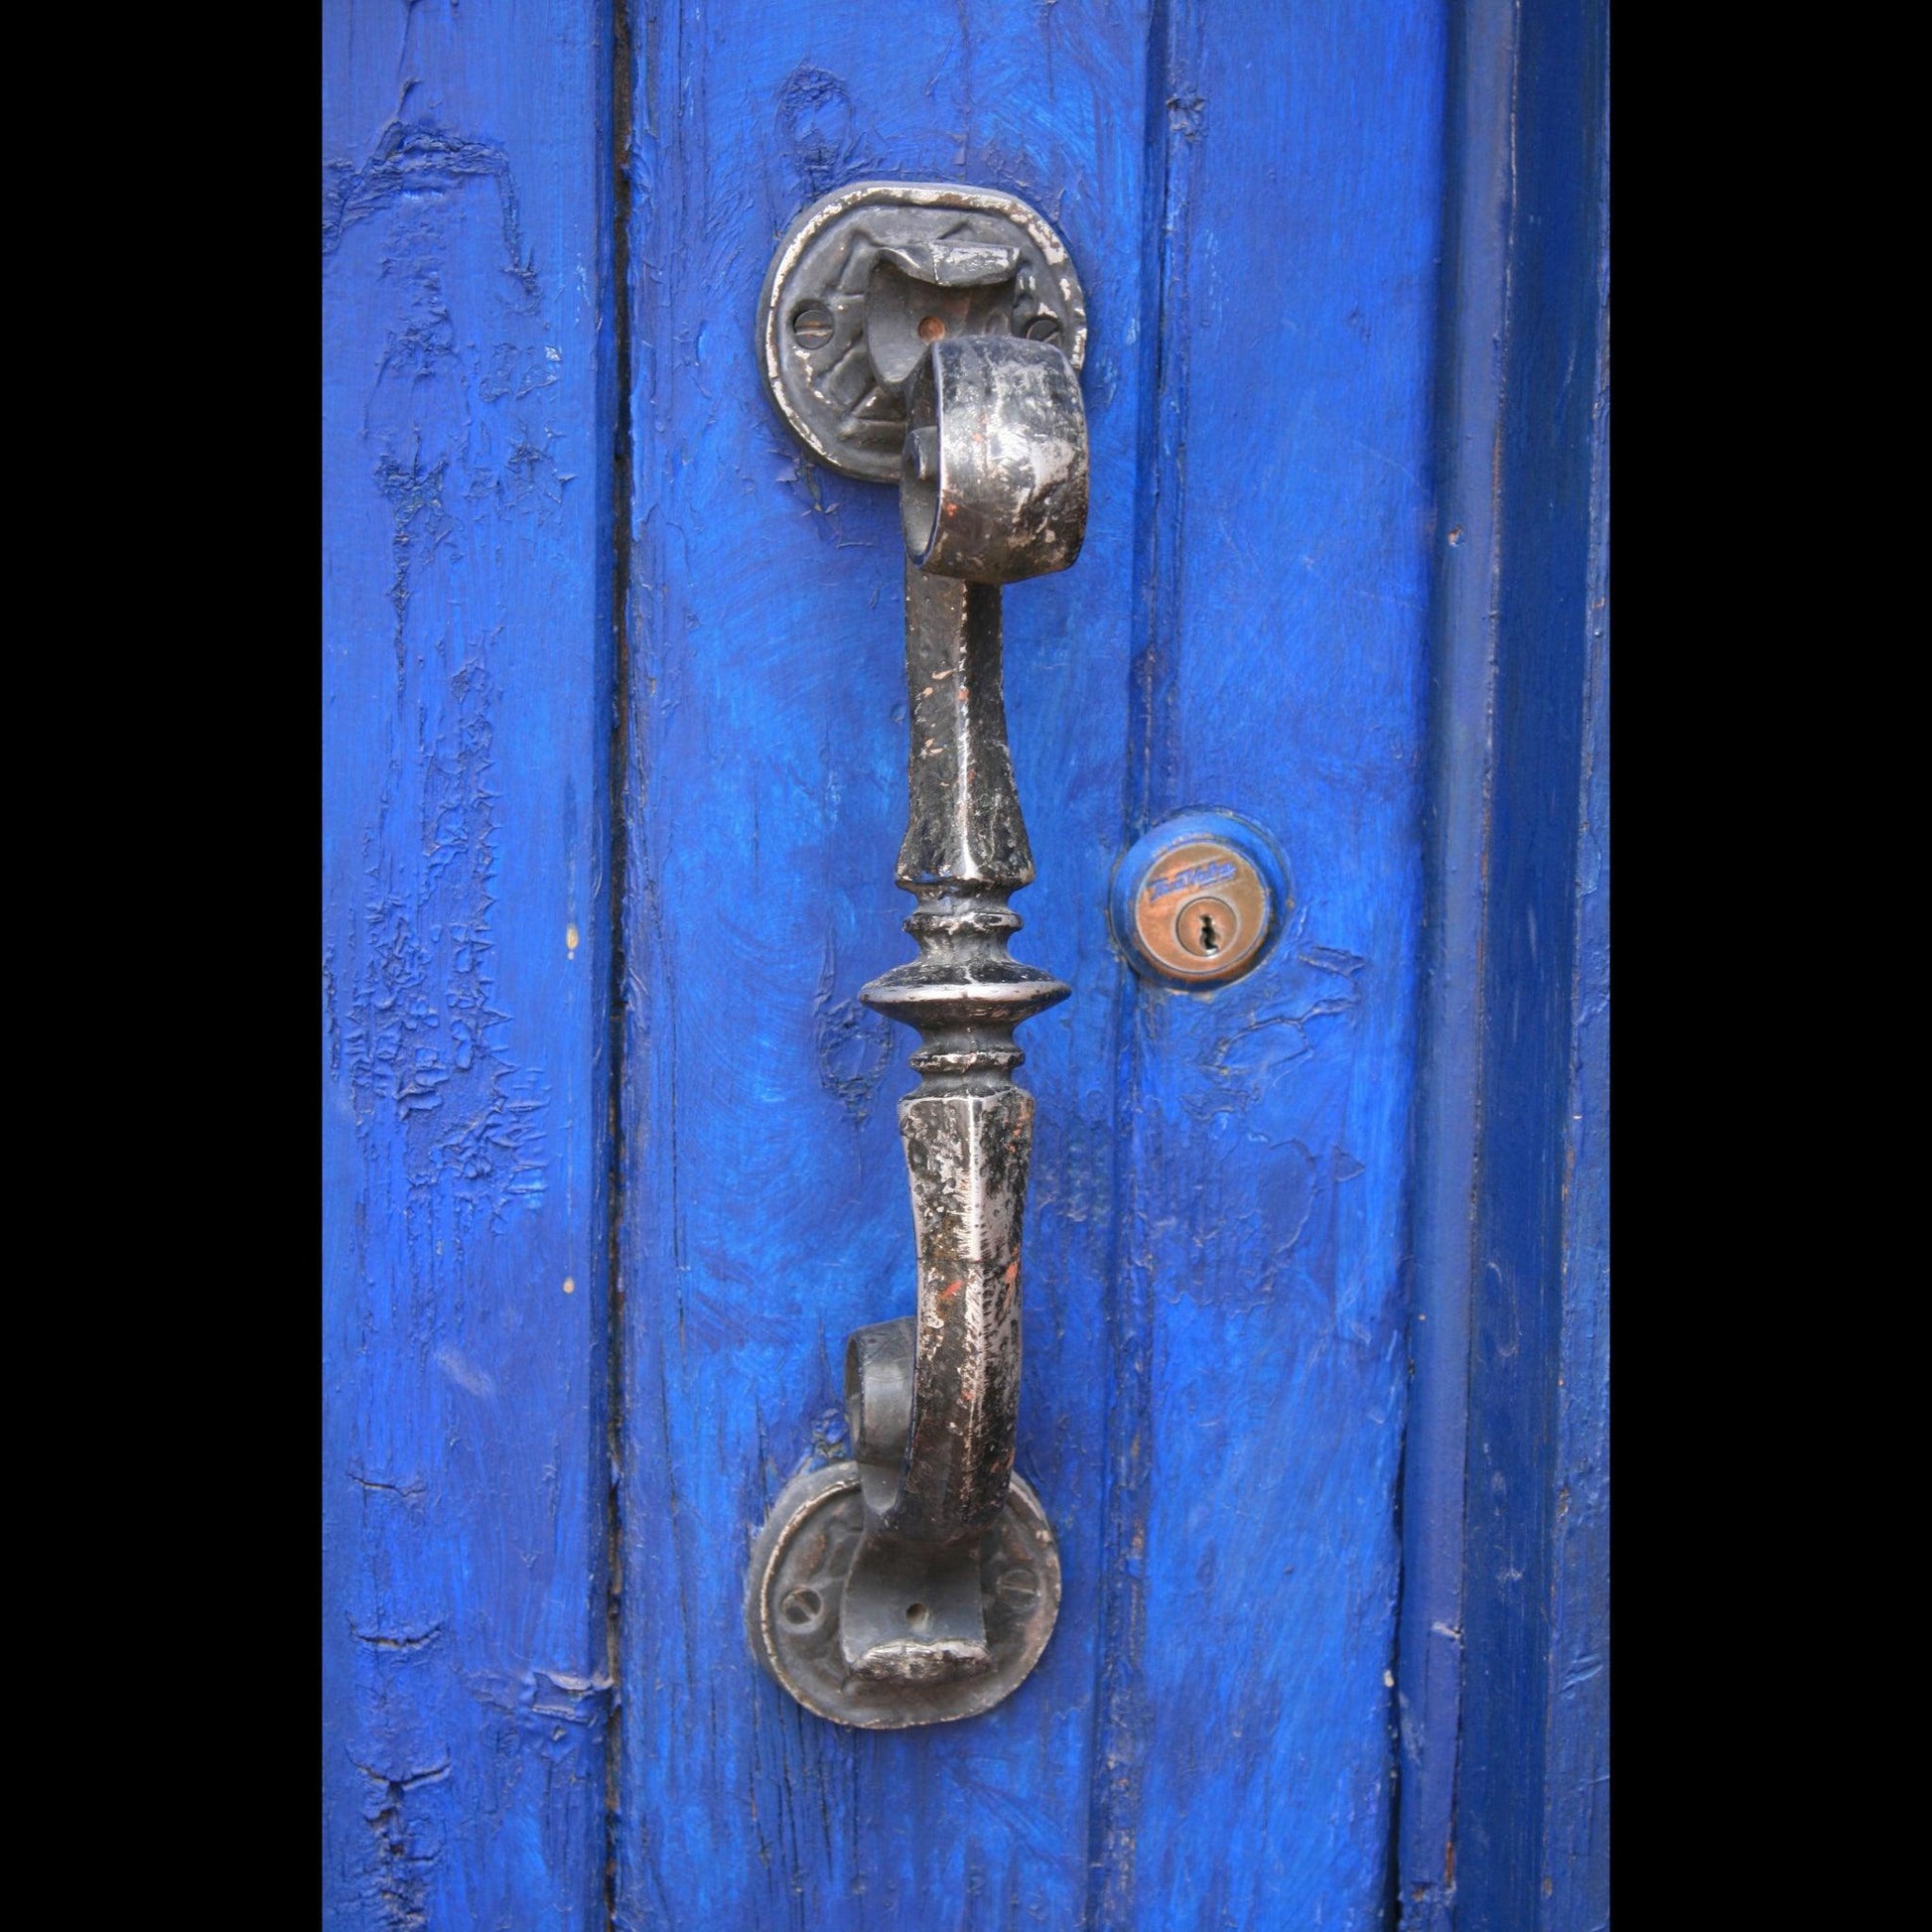 blue-door-handle-v-isenhower-photography - V. Isenhower Photography